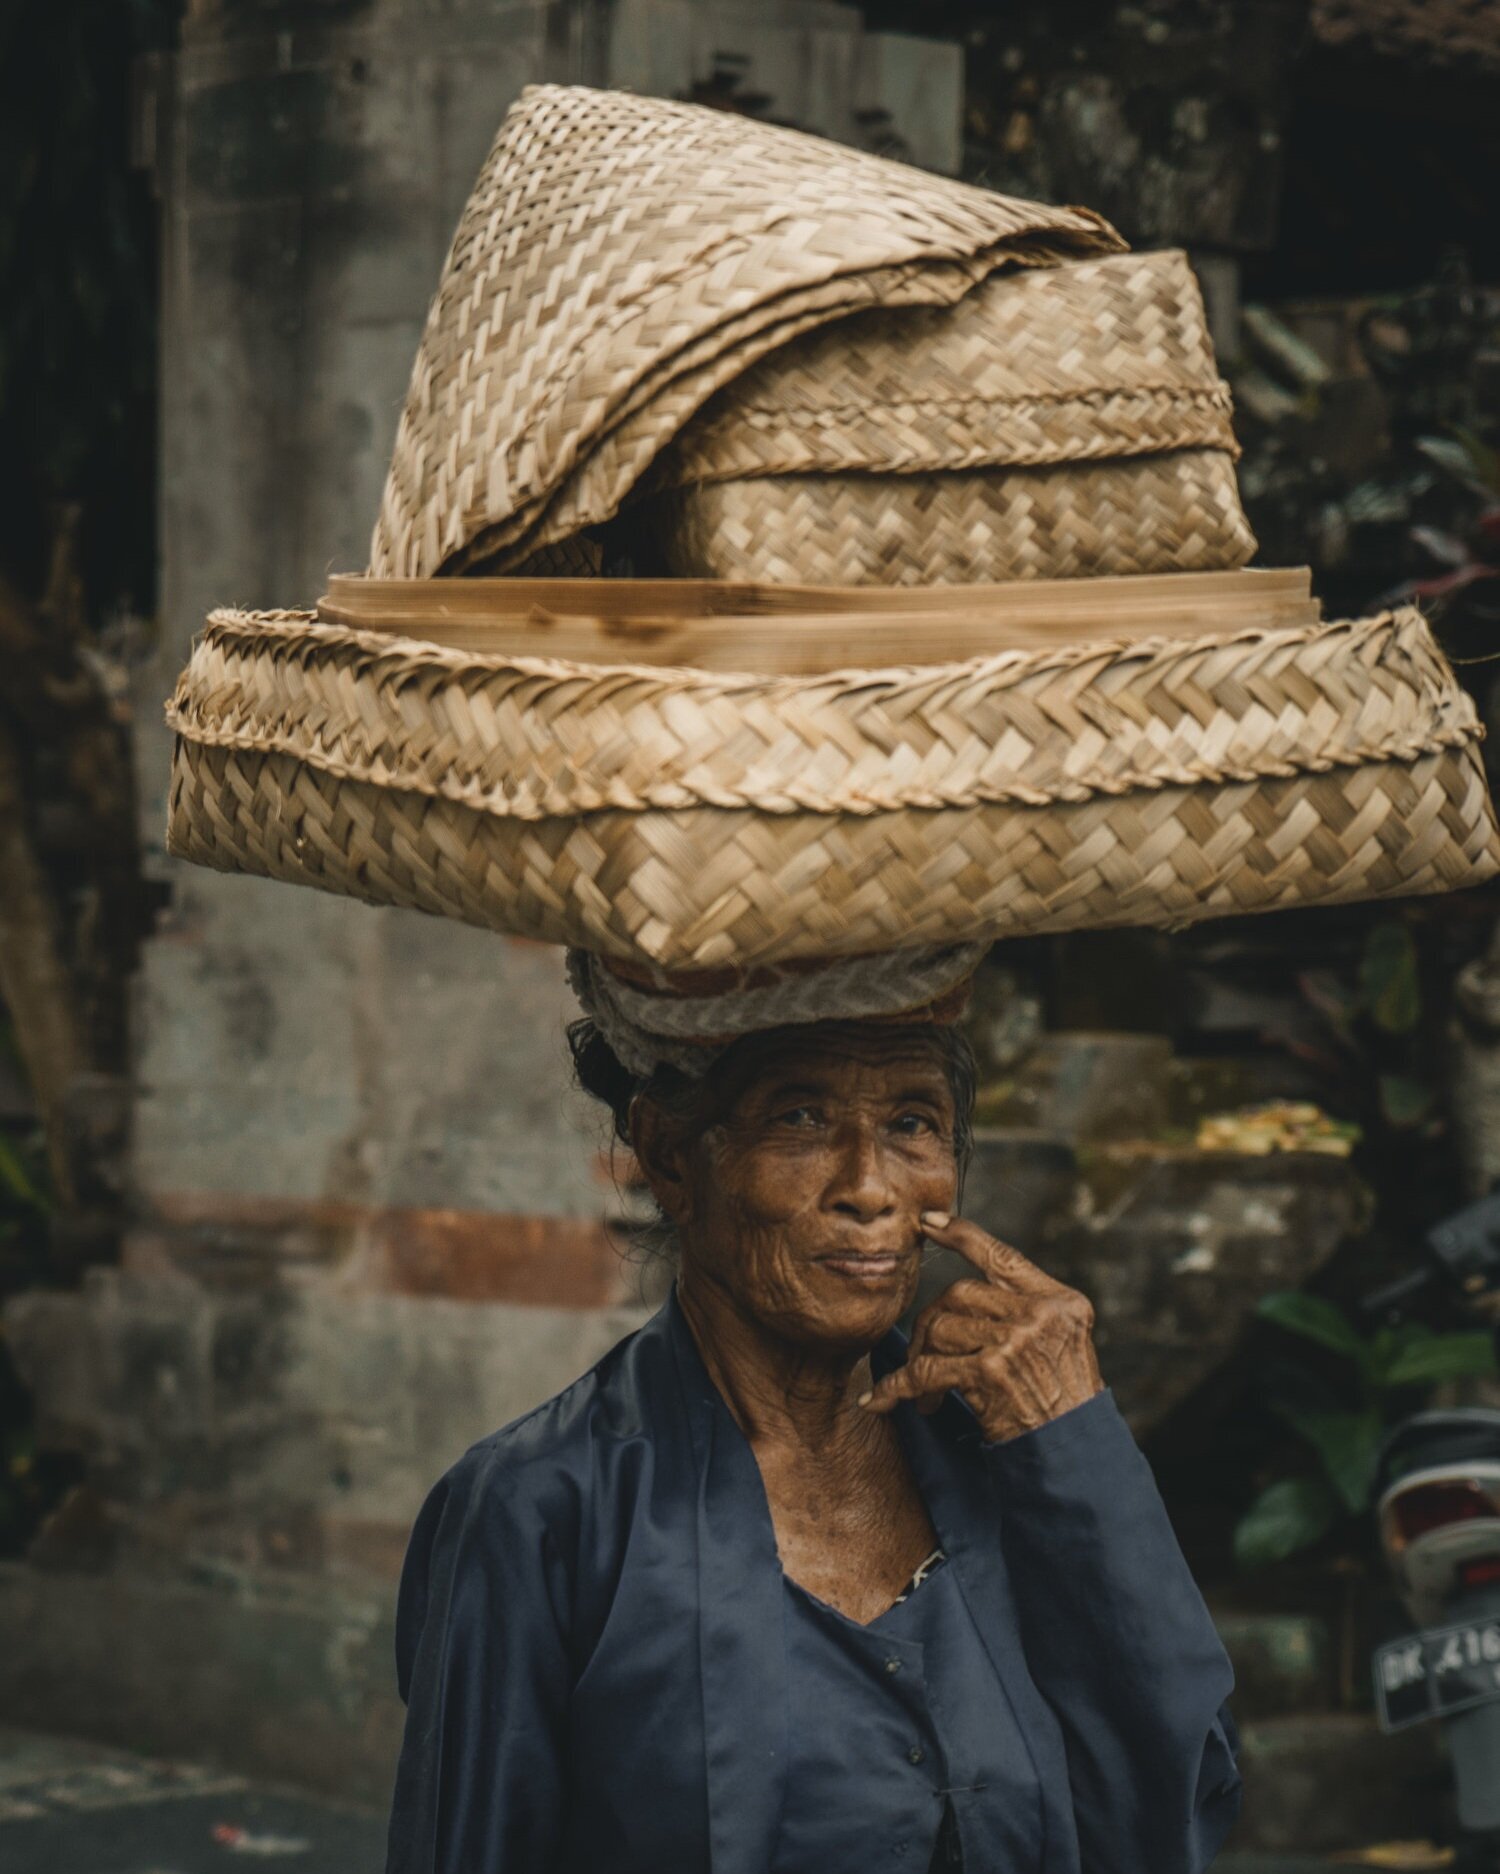 Balinese Woman, Ubud, Indonesia